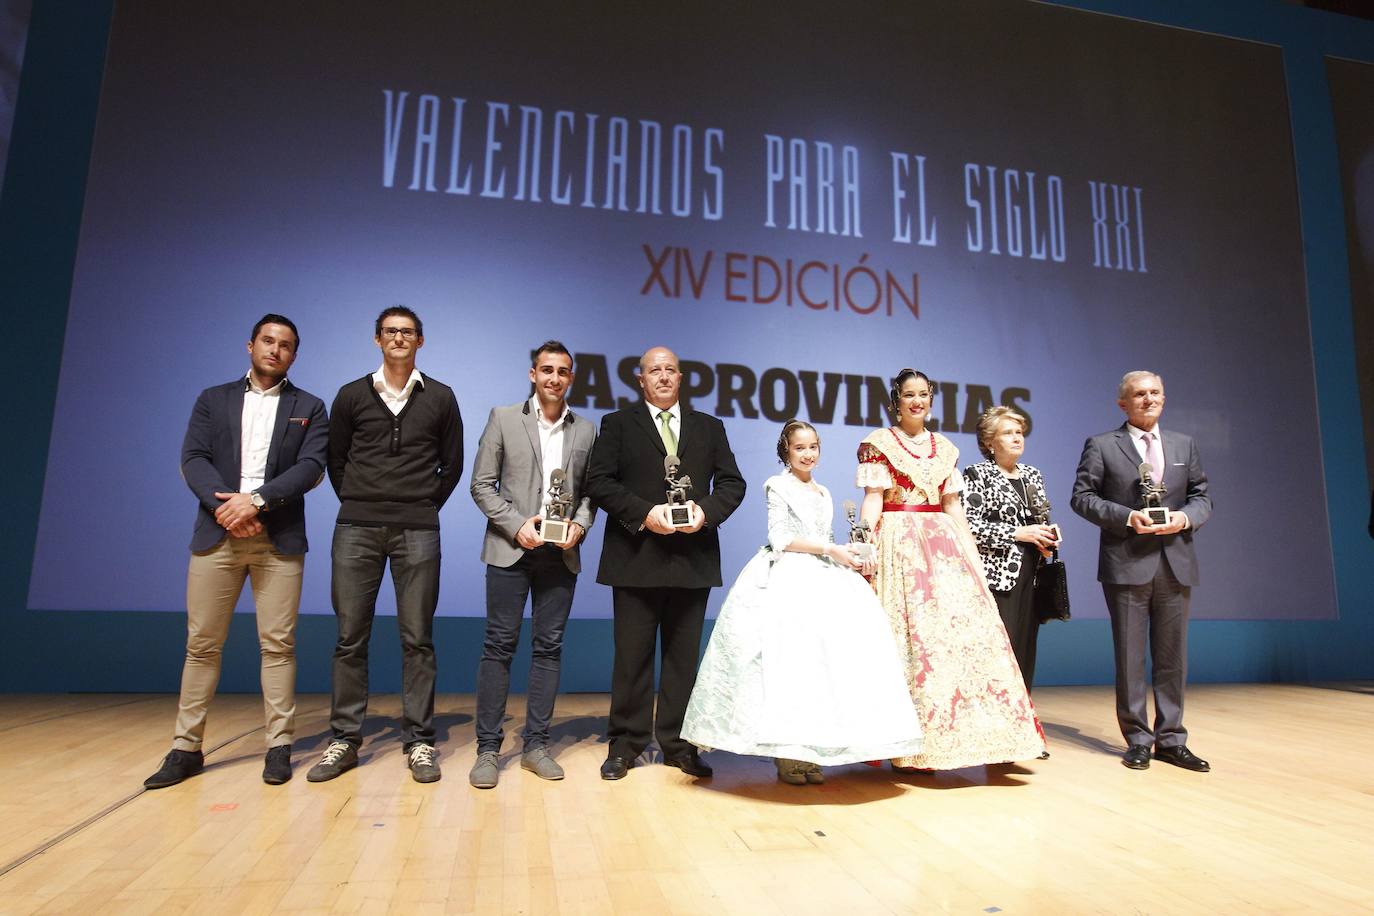 2014. XIV edición de Valencianos para el Siglo XXI. Premiados: Paco Alcácer, Antonio Valero, Pilota valenciana, Las Fallas y Proyecto Vivir.